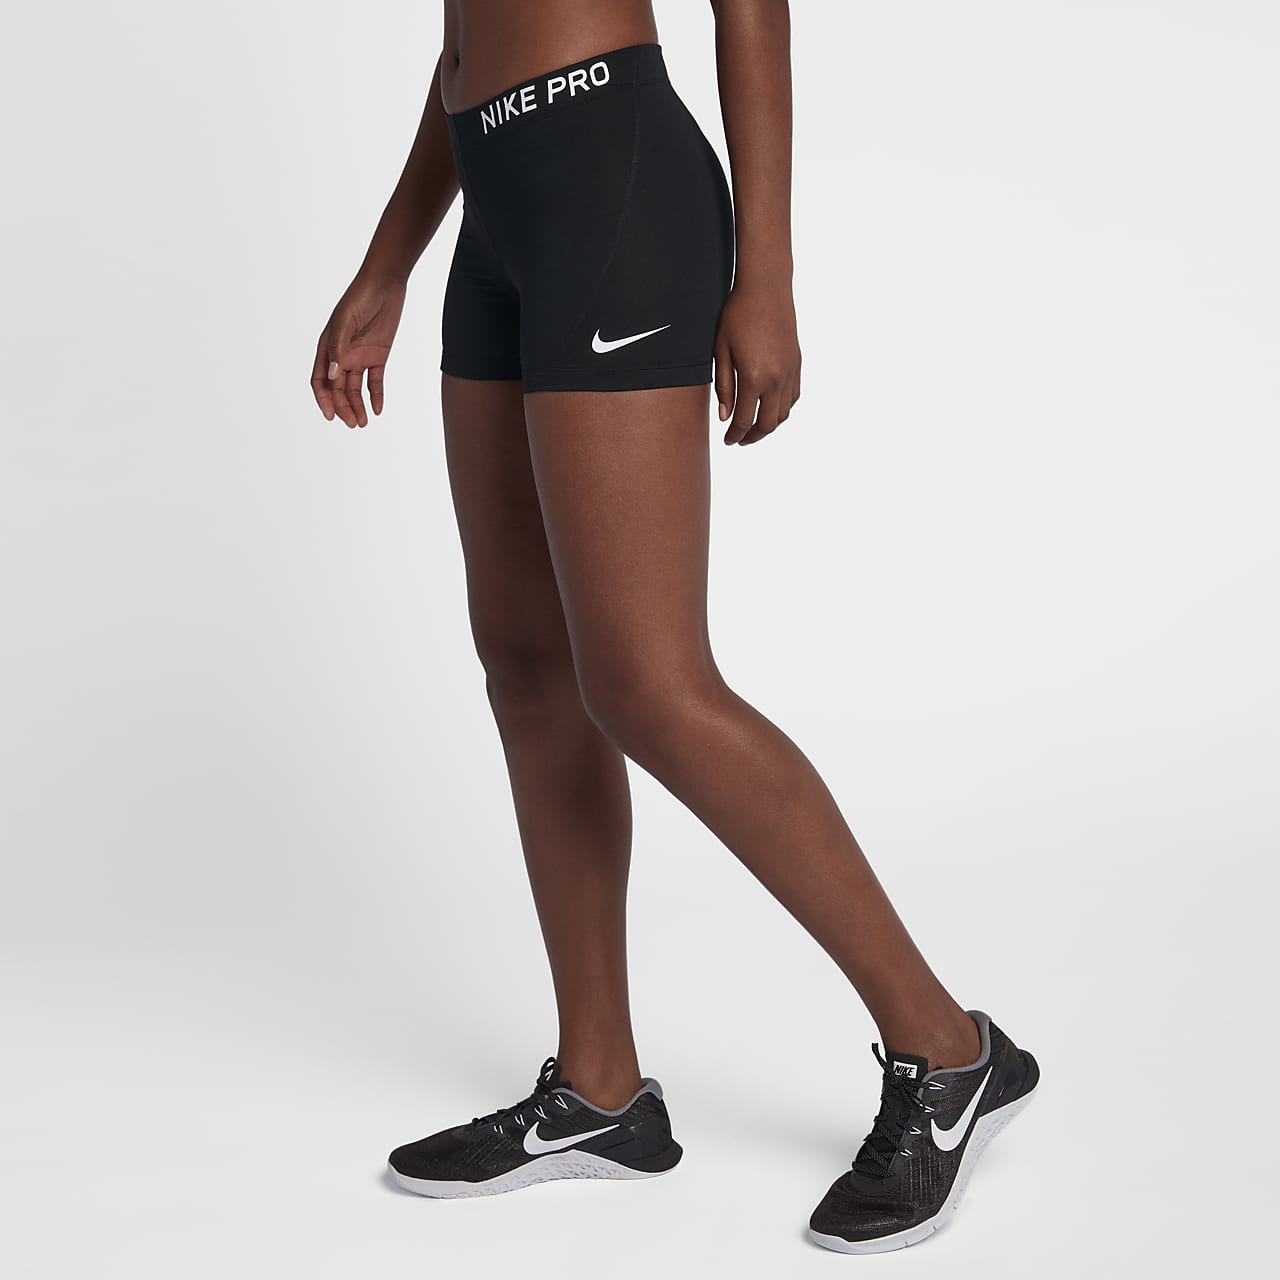 Nike In Store Online, 40% - mpgc.net